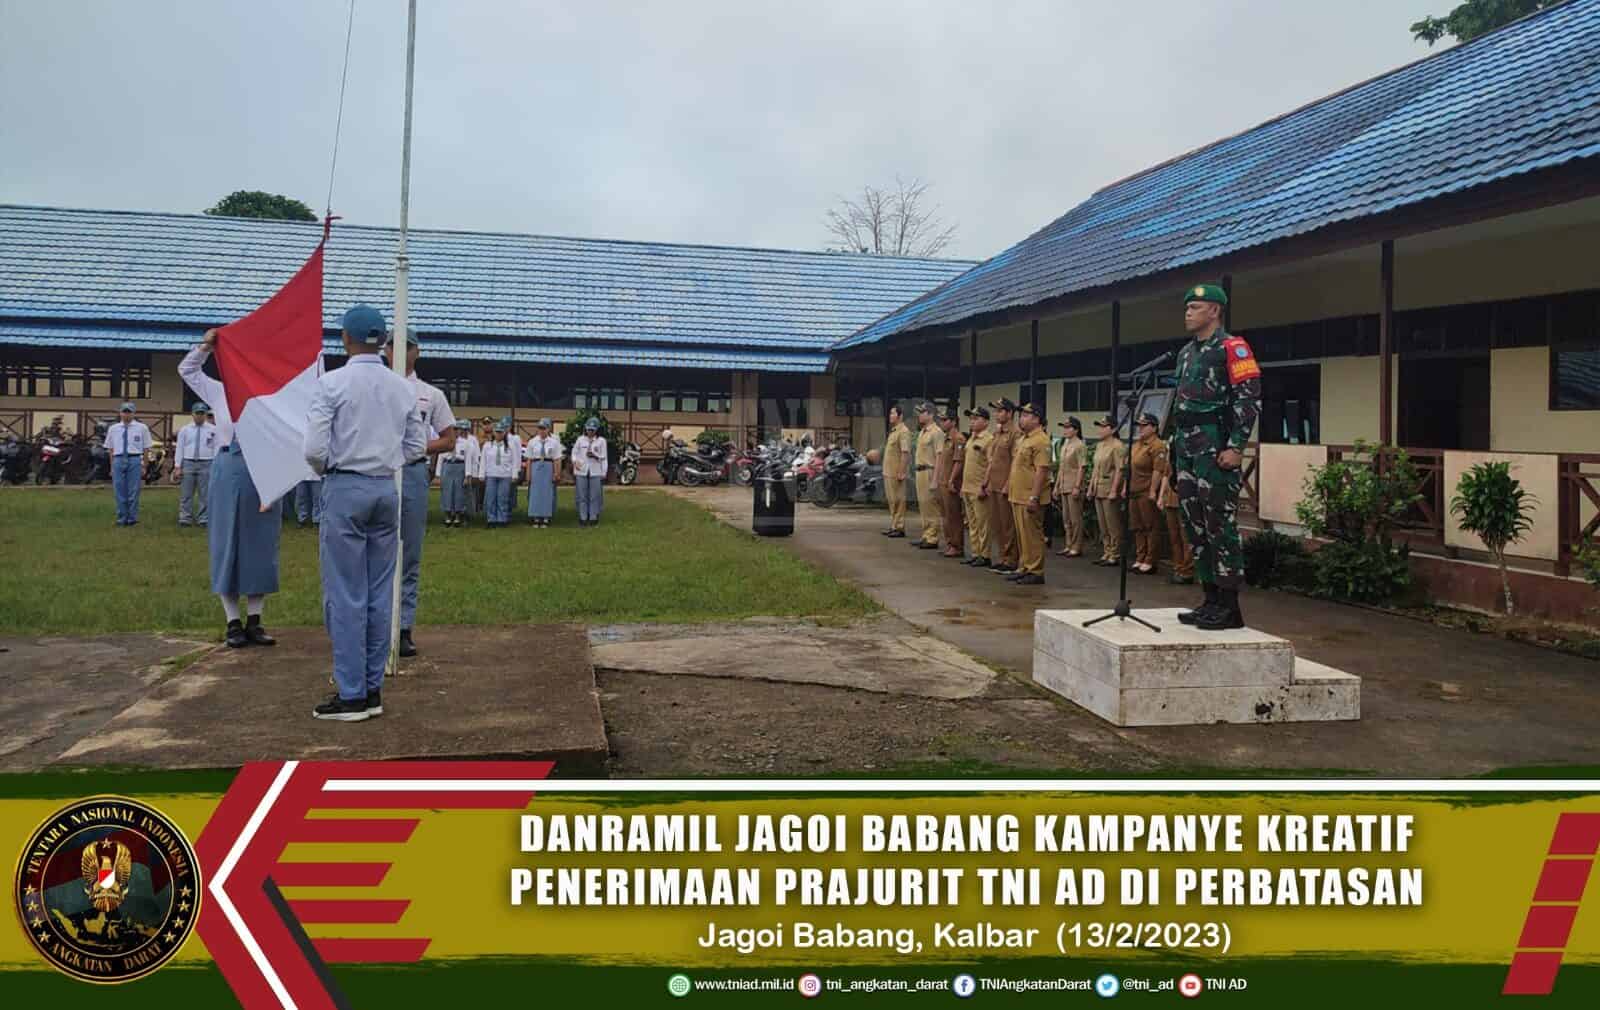 Danramil Jagoi Babang Kampanye Kreatif Penerimaan Prajurit TNI AD di Perbatasan